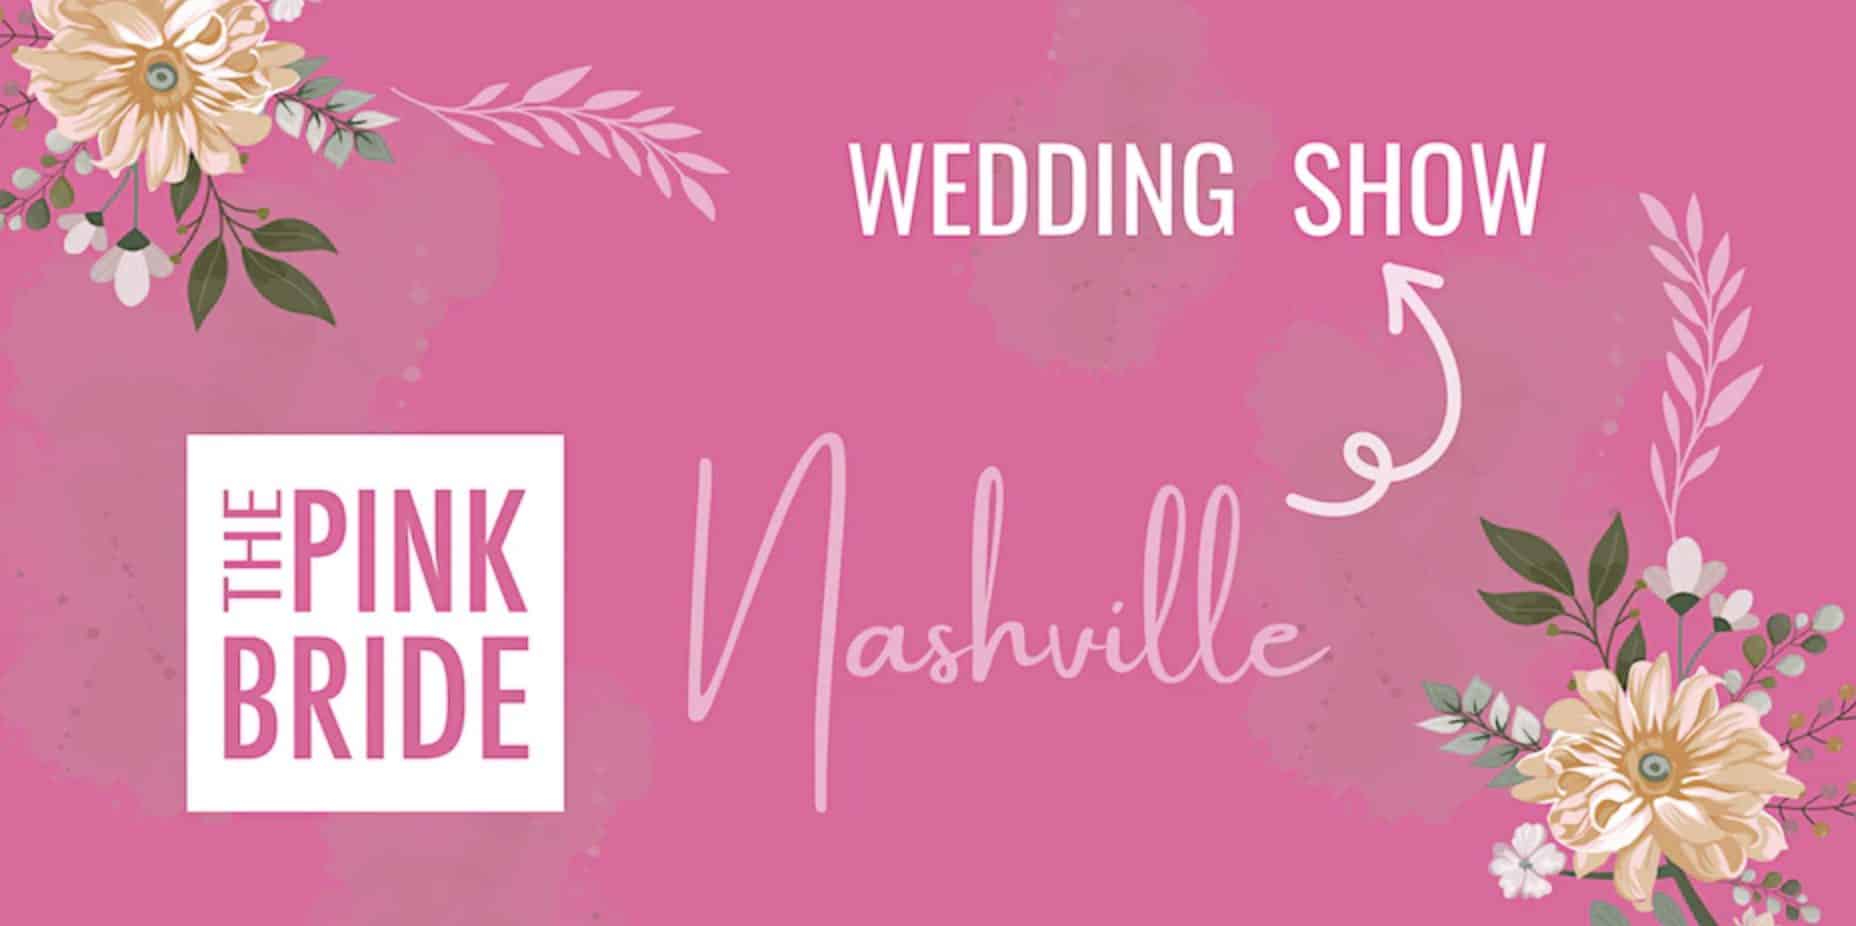 Nashville Pink Bride Wedding Show.